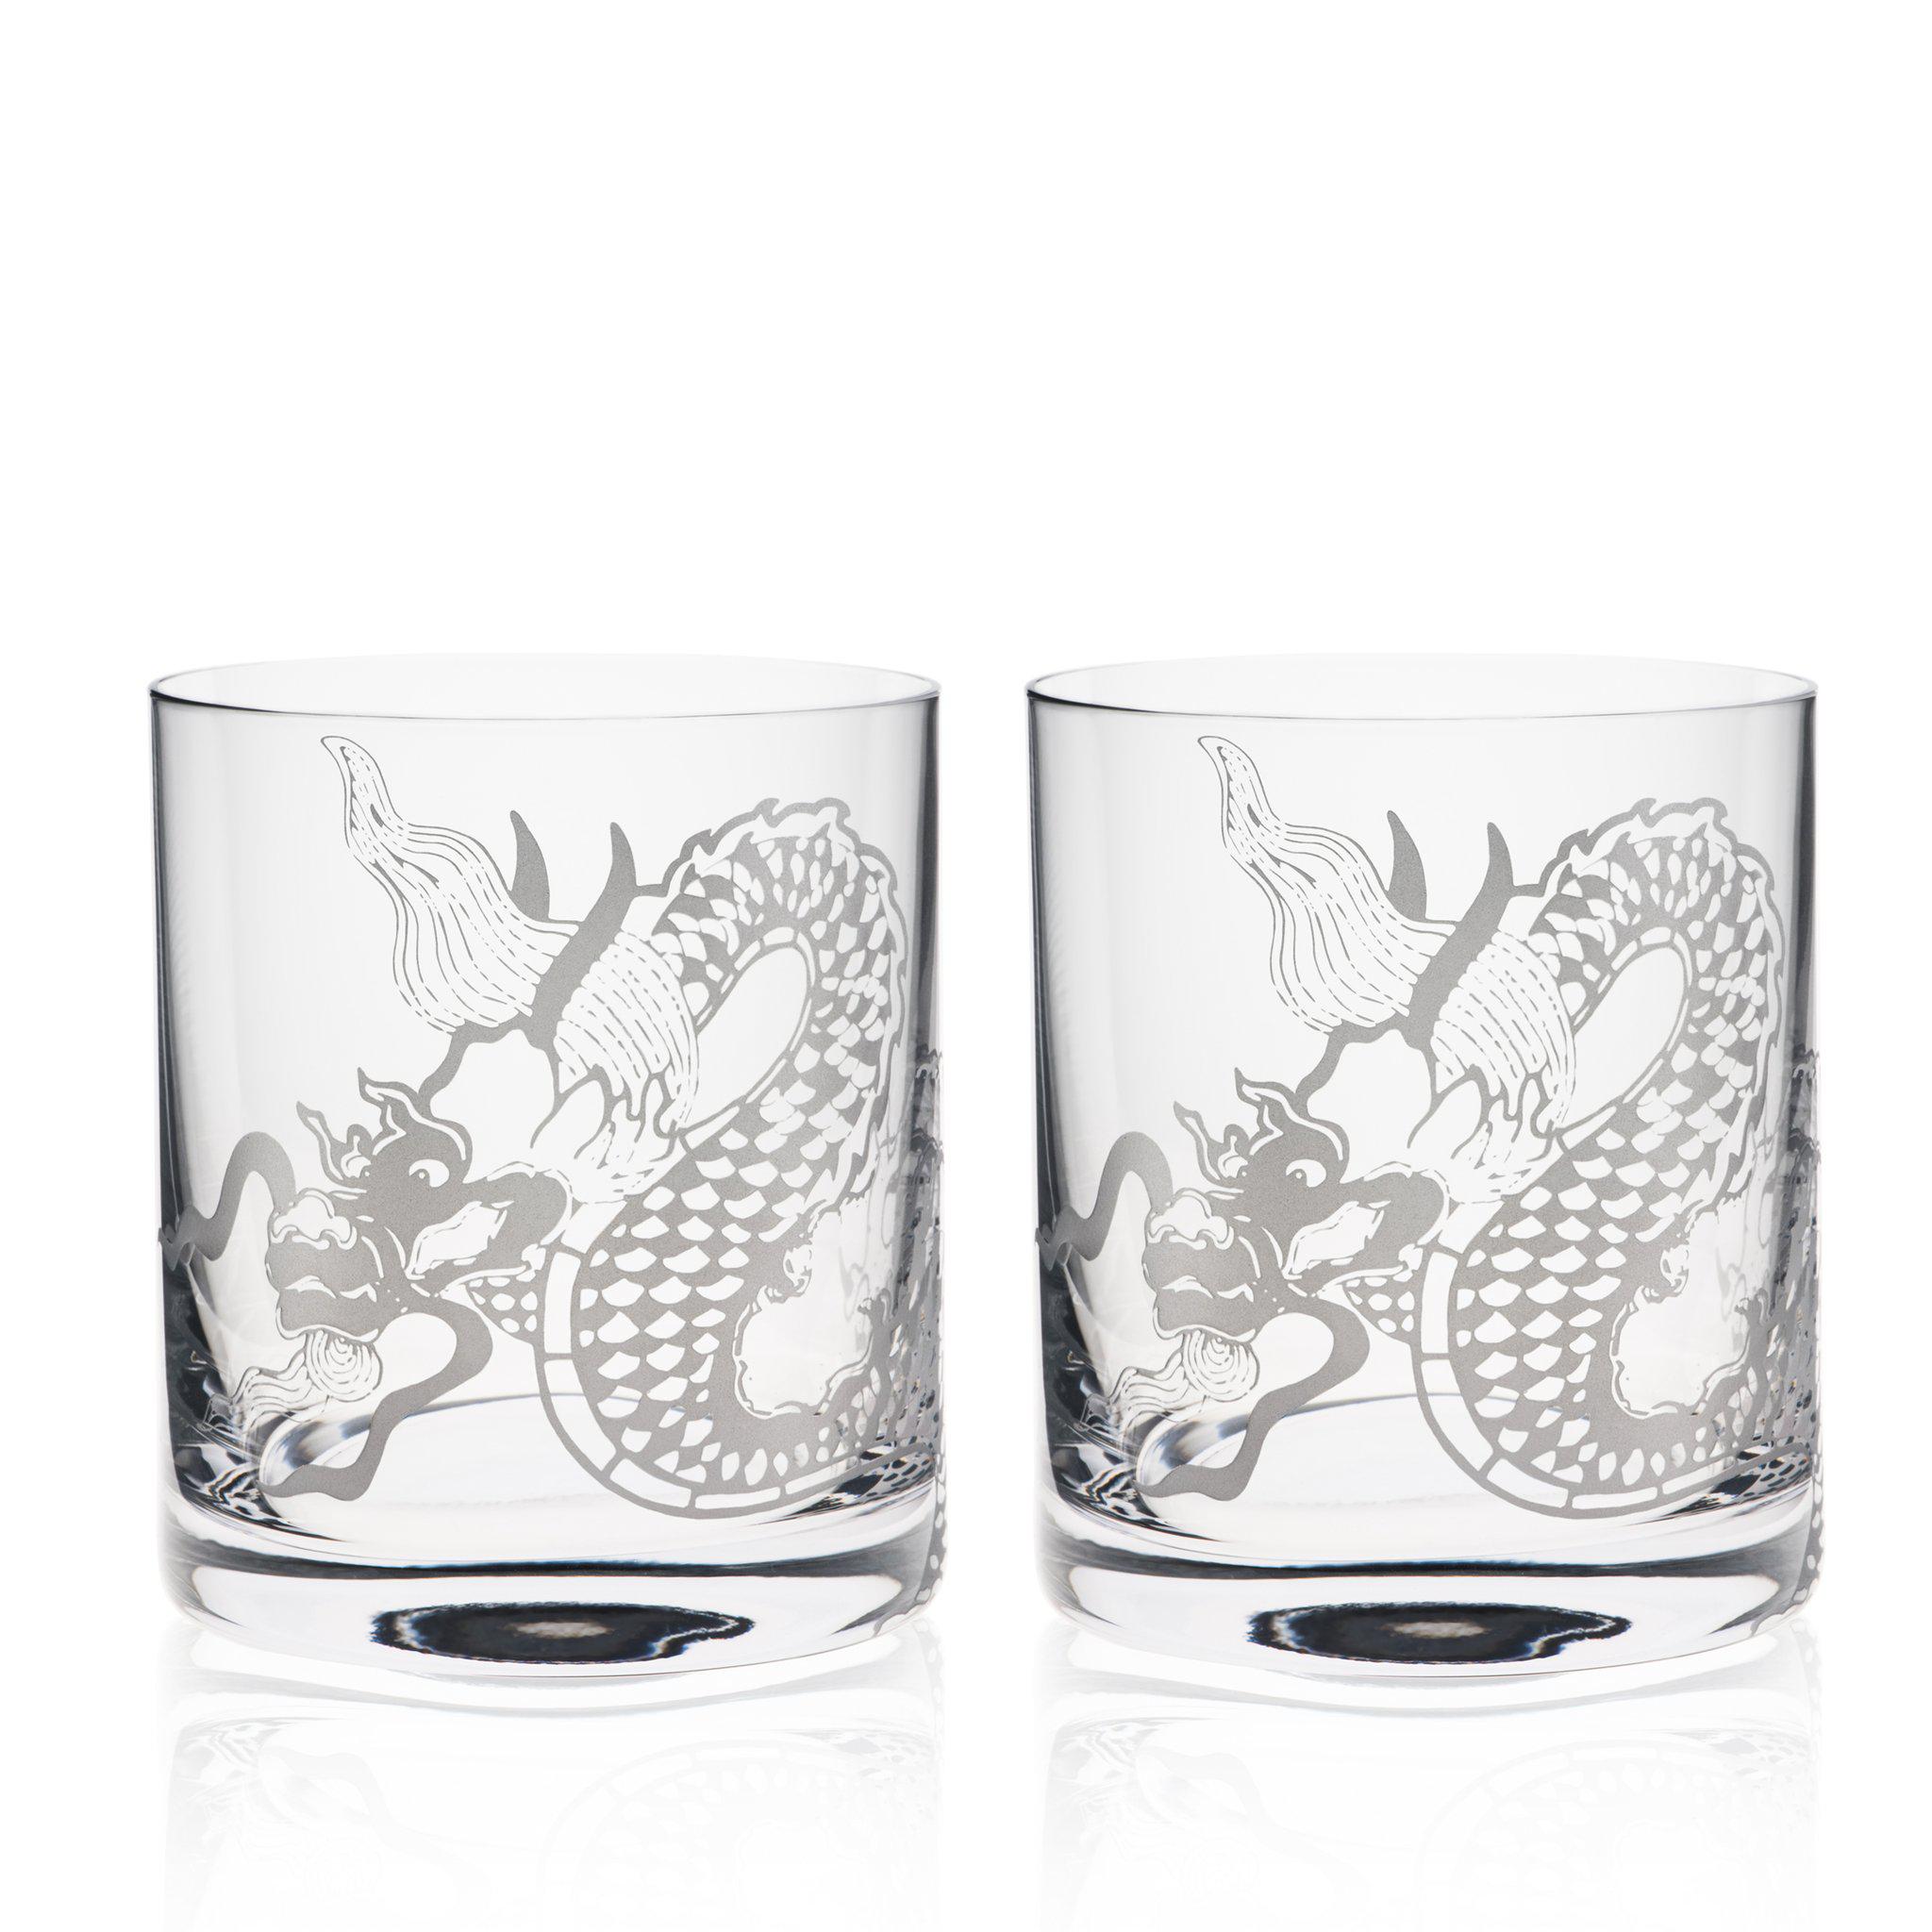 dragon mugs and glasses